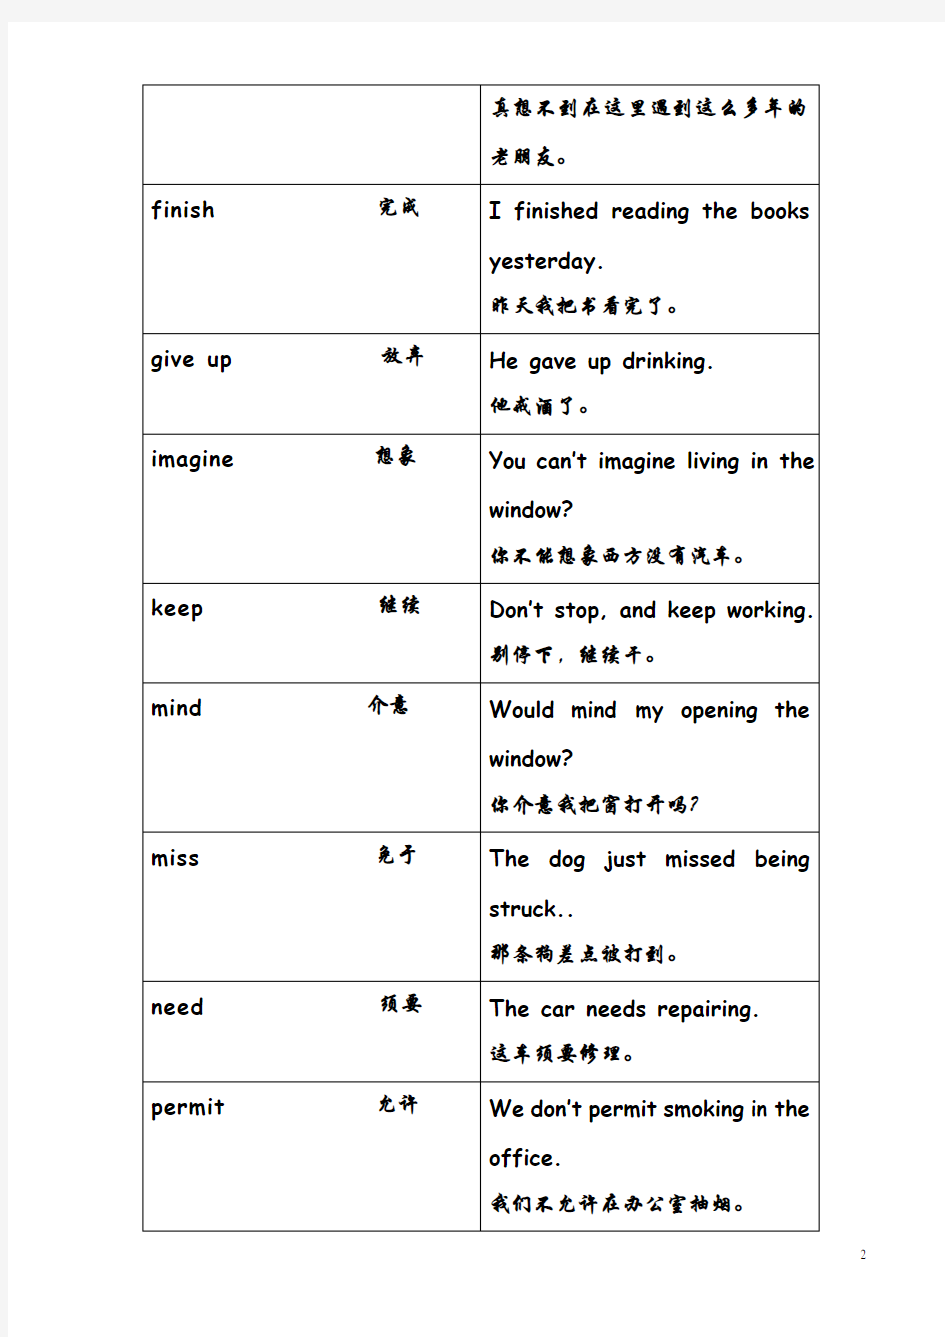 英语动词基本分类一览表